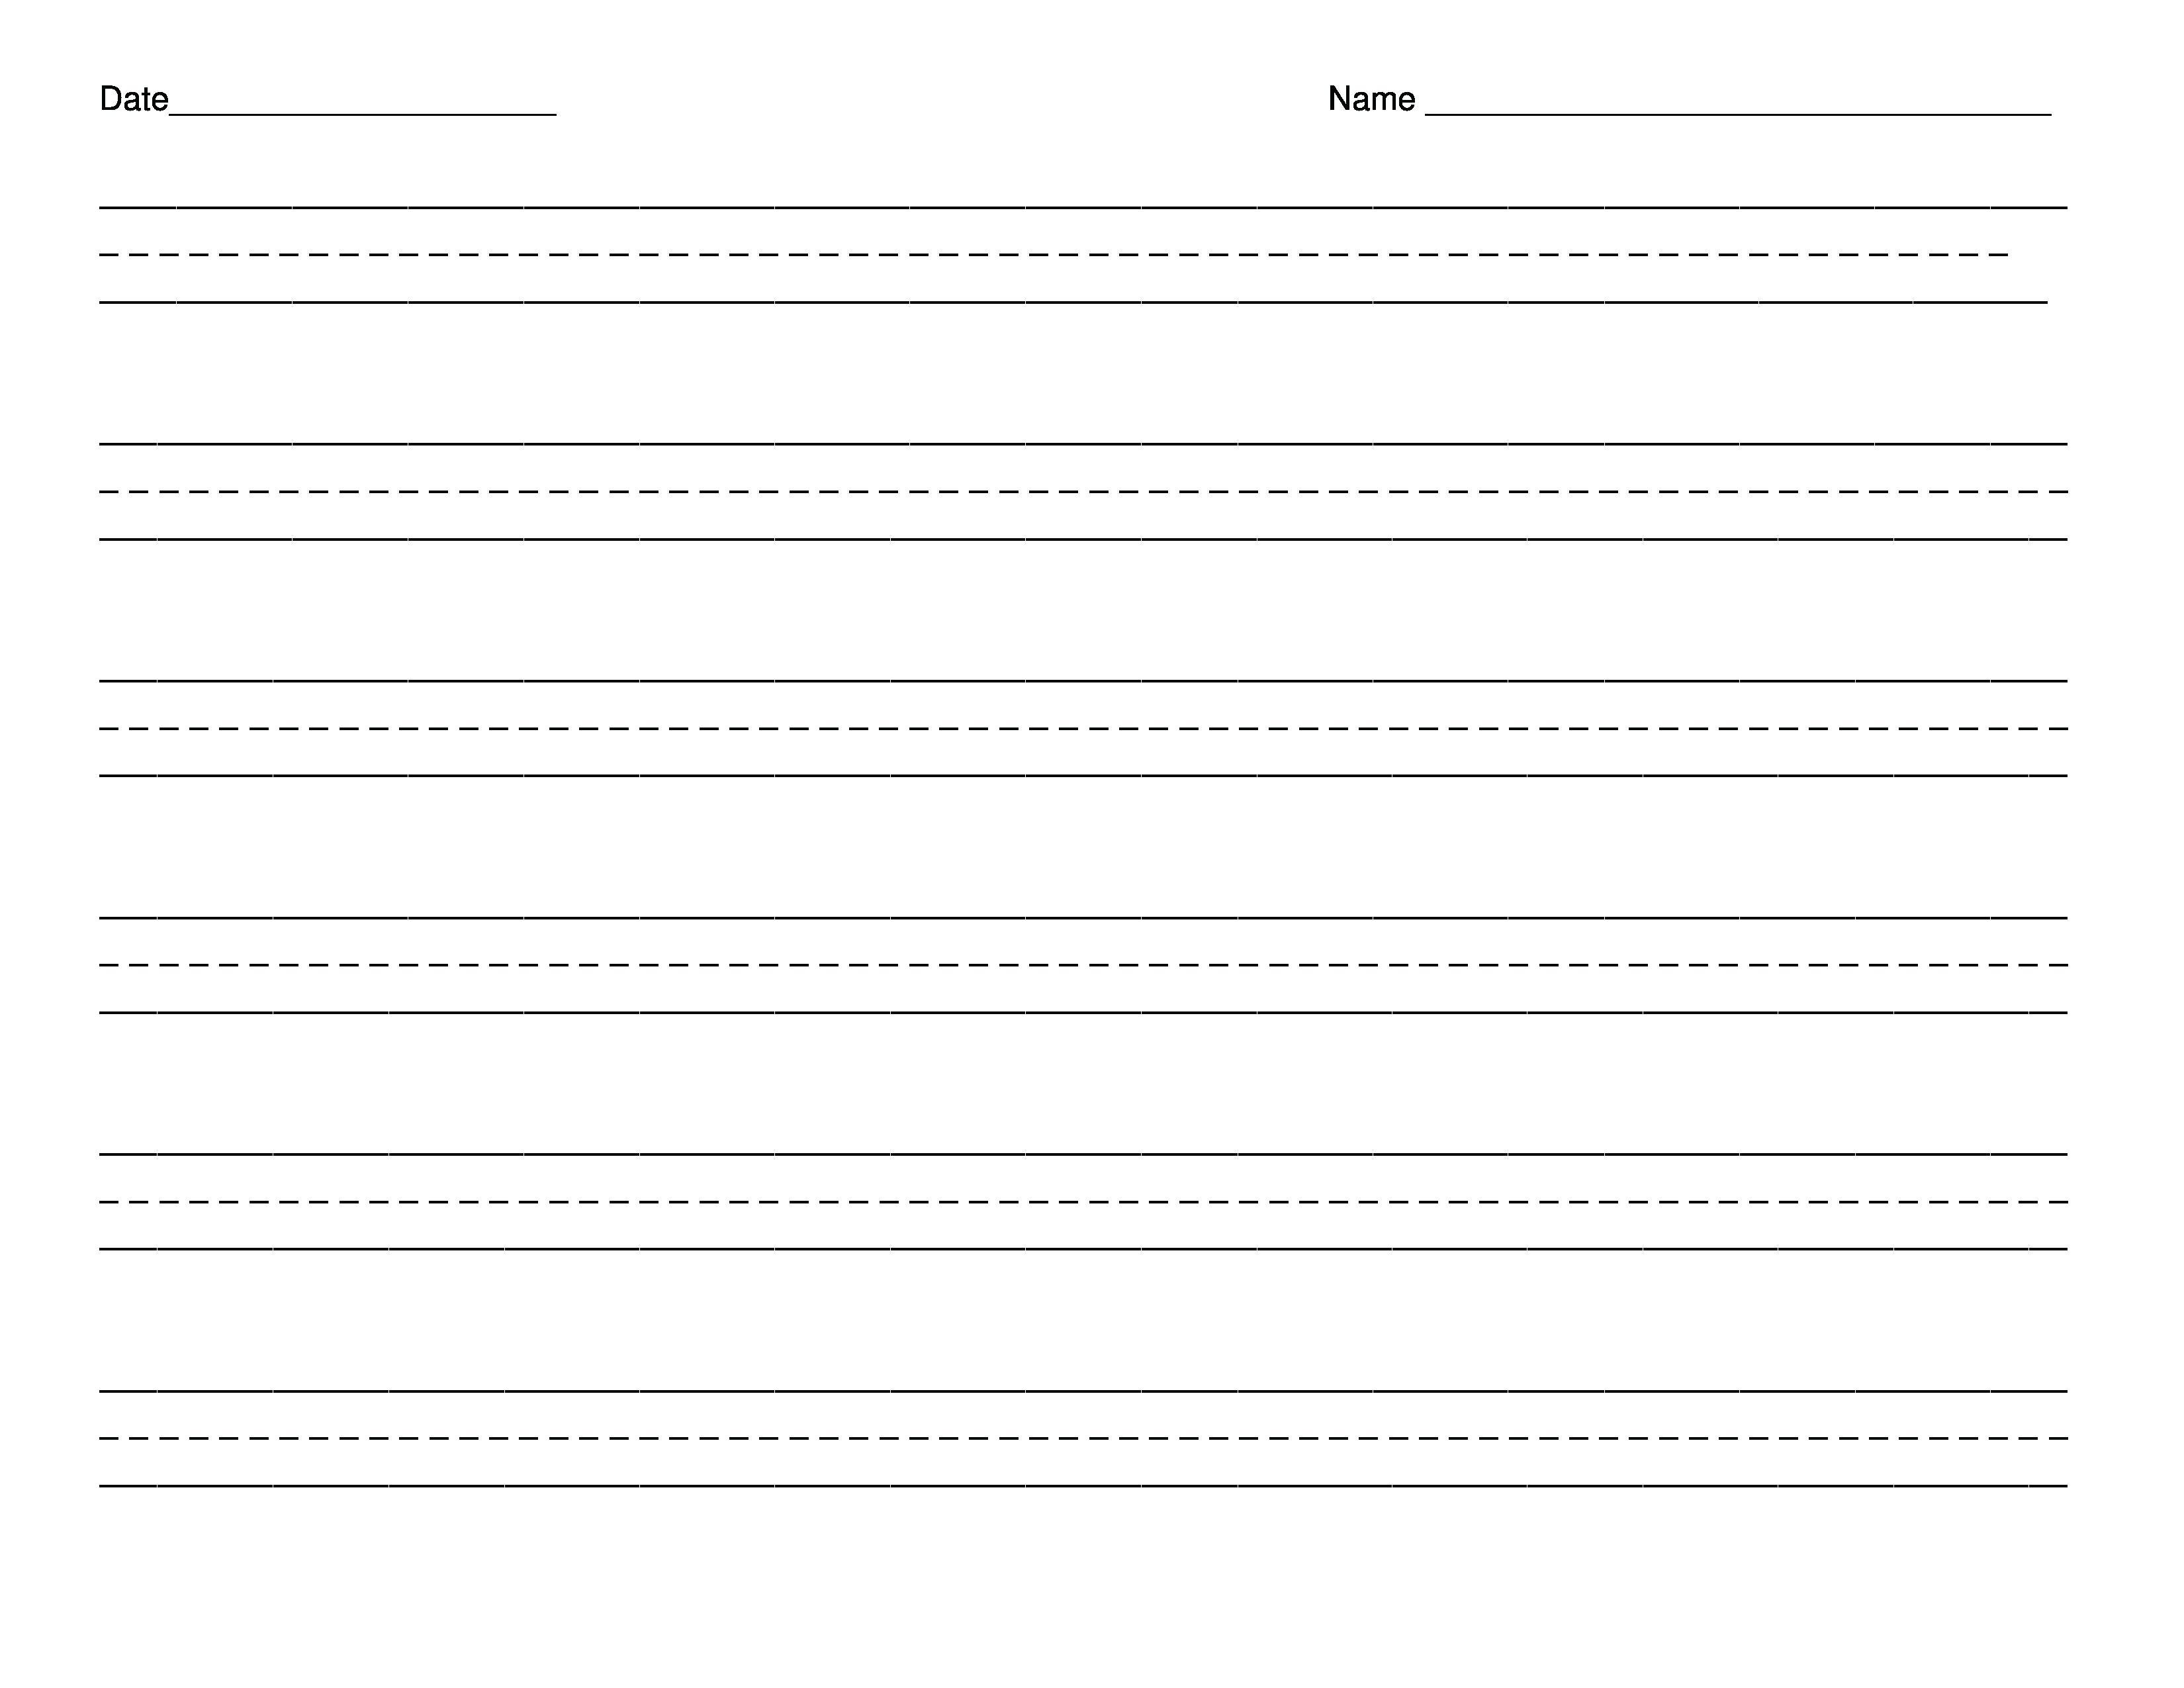 1St Grade Handwriting Paper Printable – Shoppingfoorme.club - Free Printable Handwriting Paper For First Grade